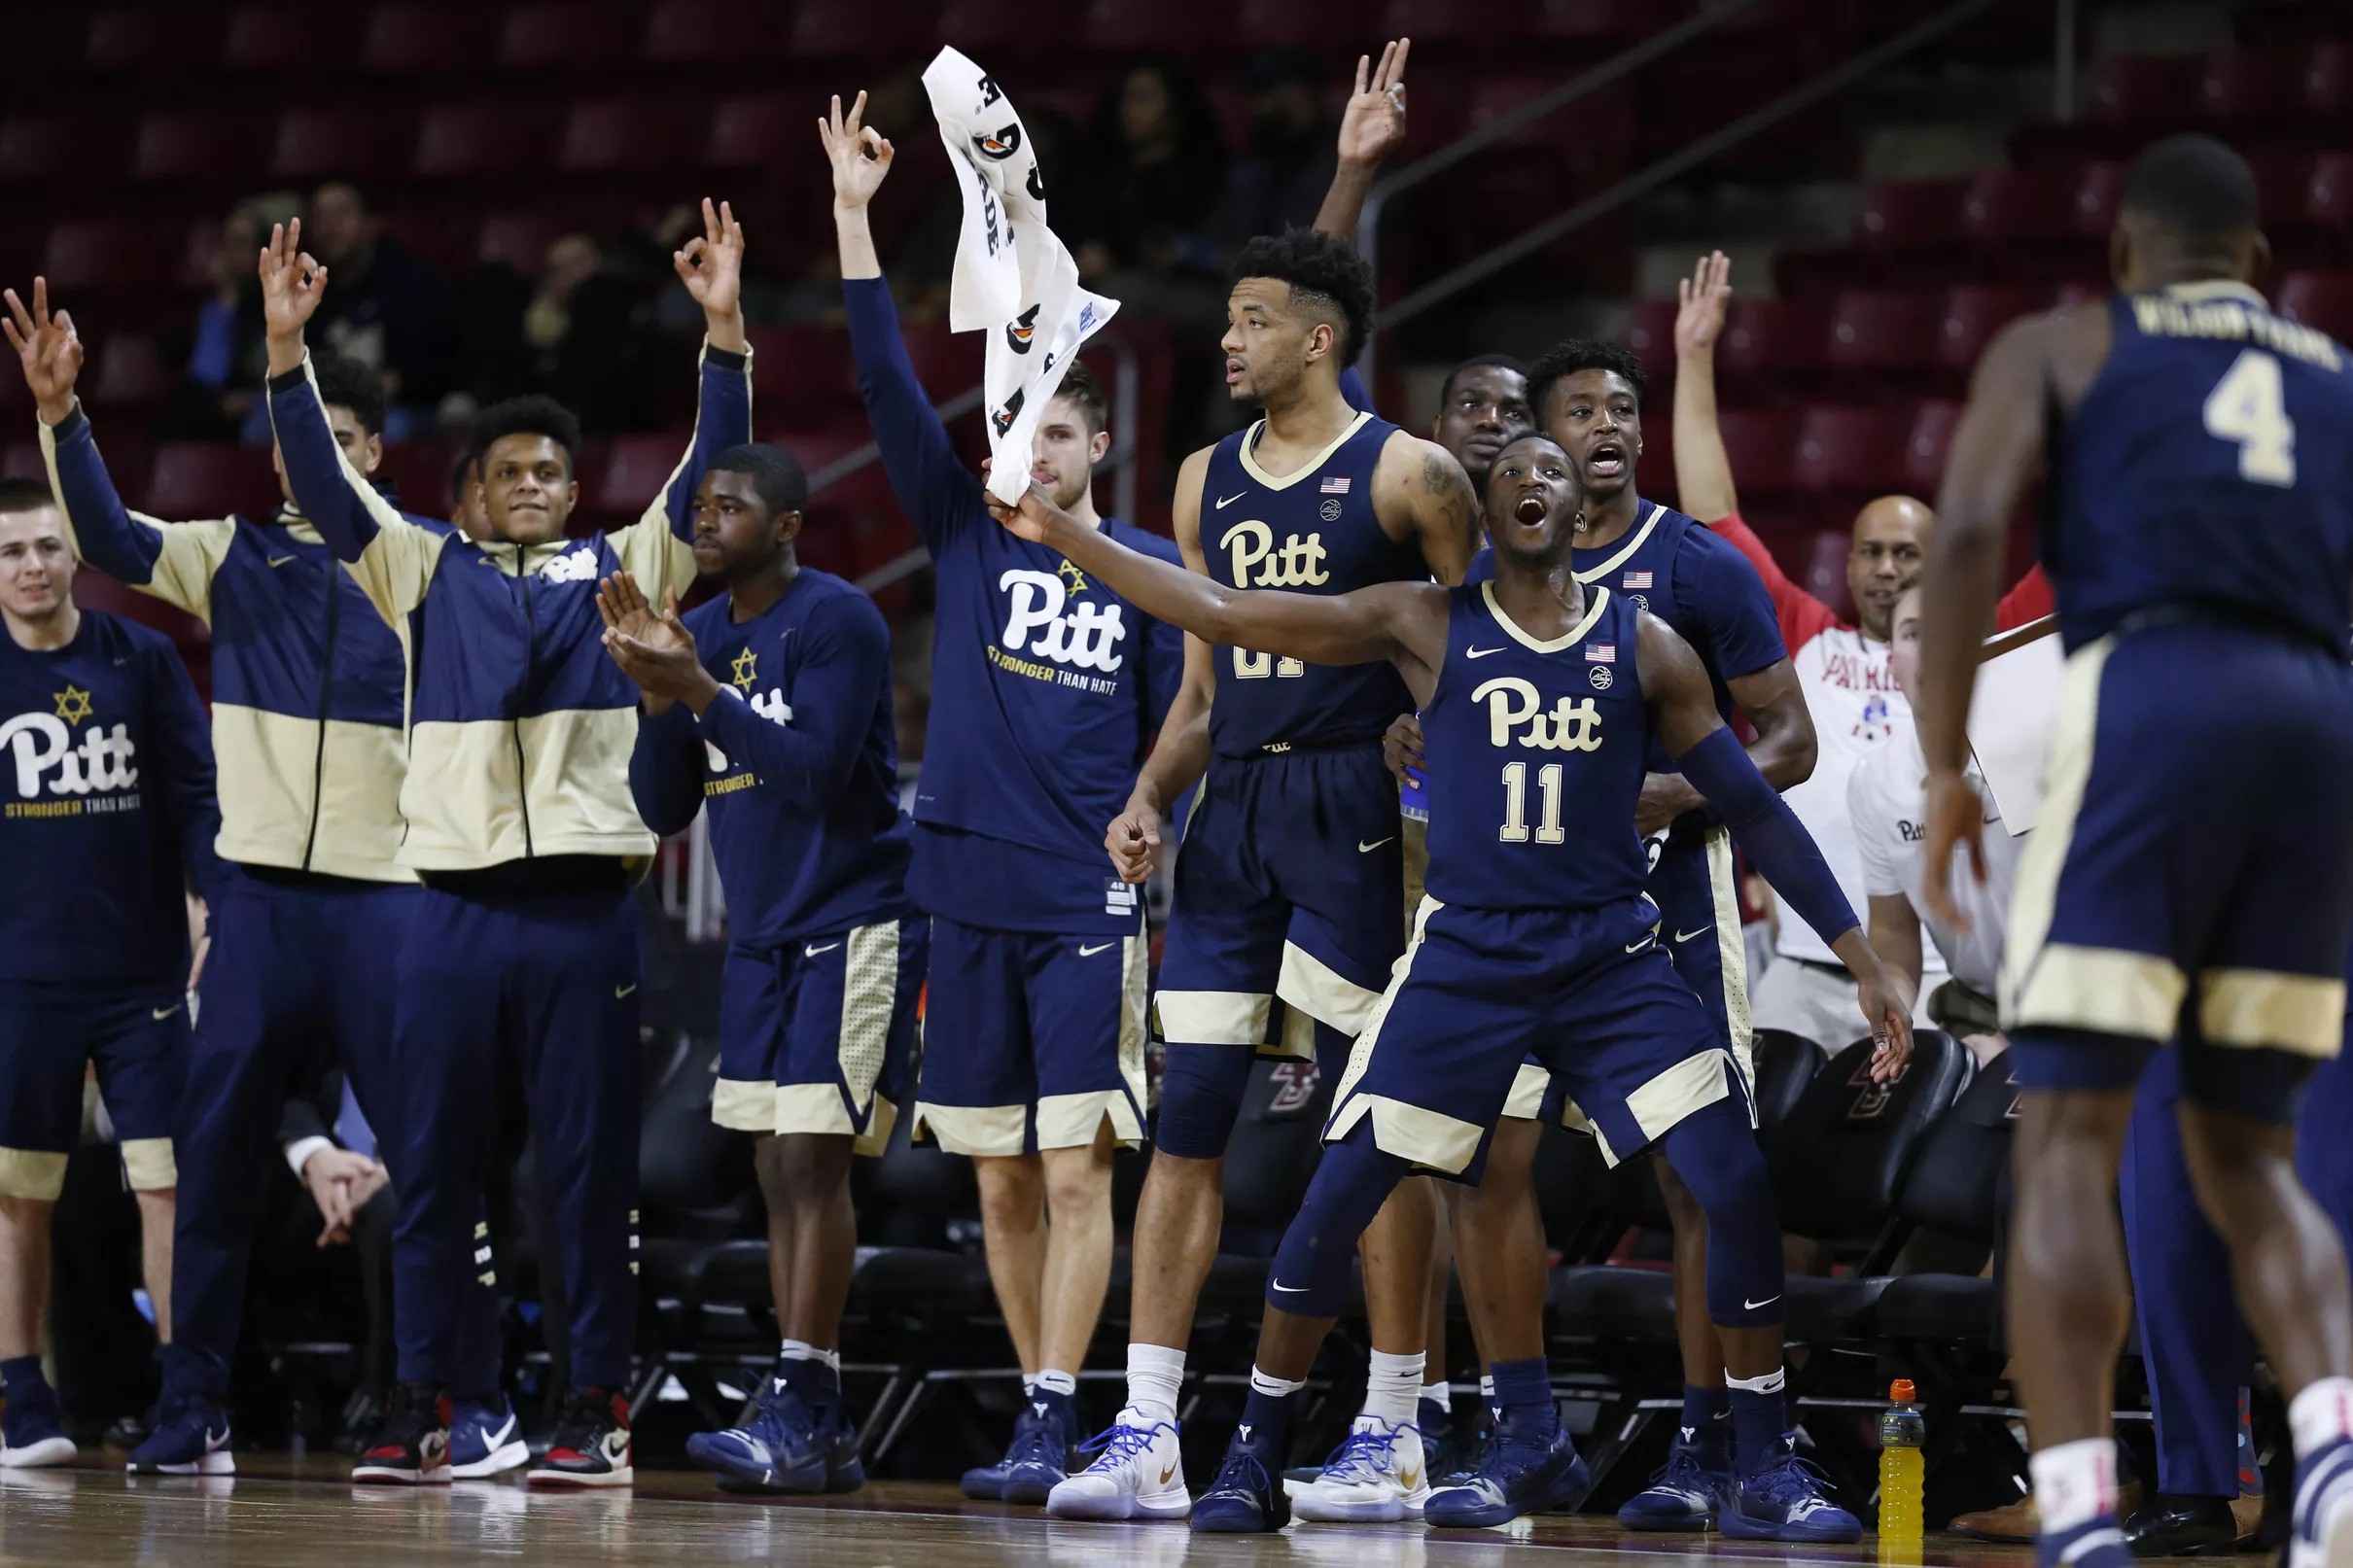 Pitt Men’s Basketball ACC Opponents through 2022 released